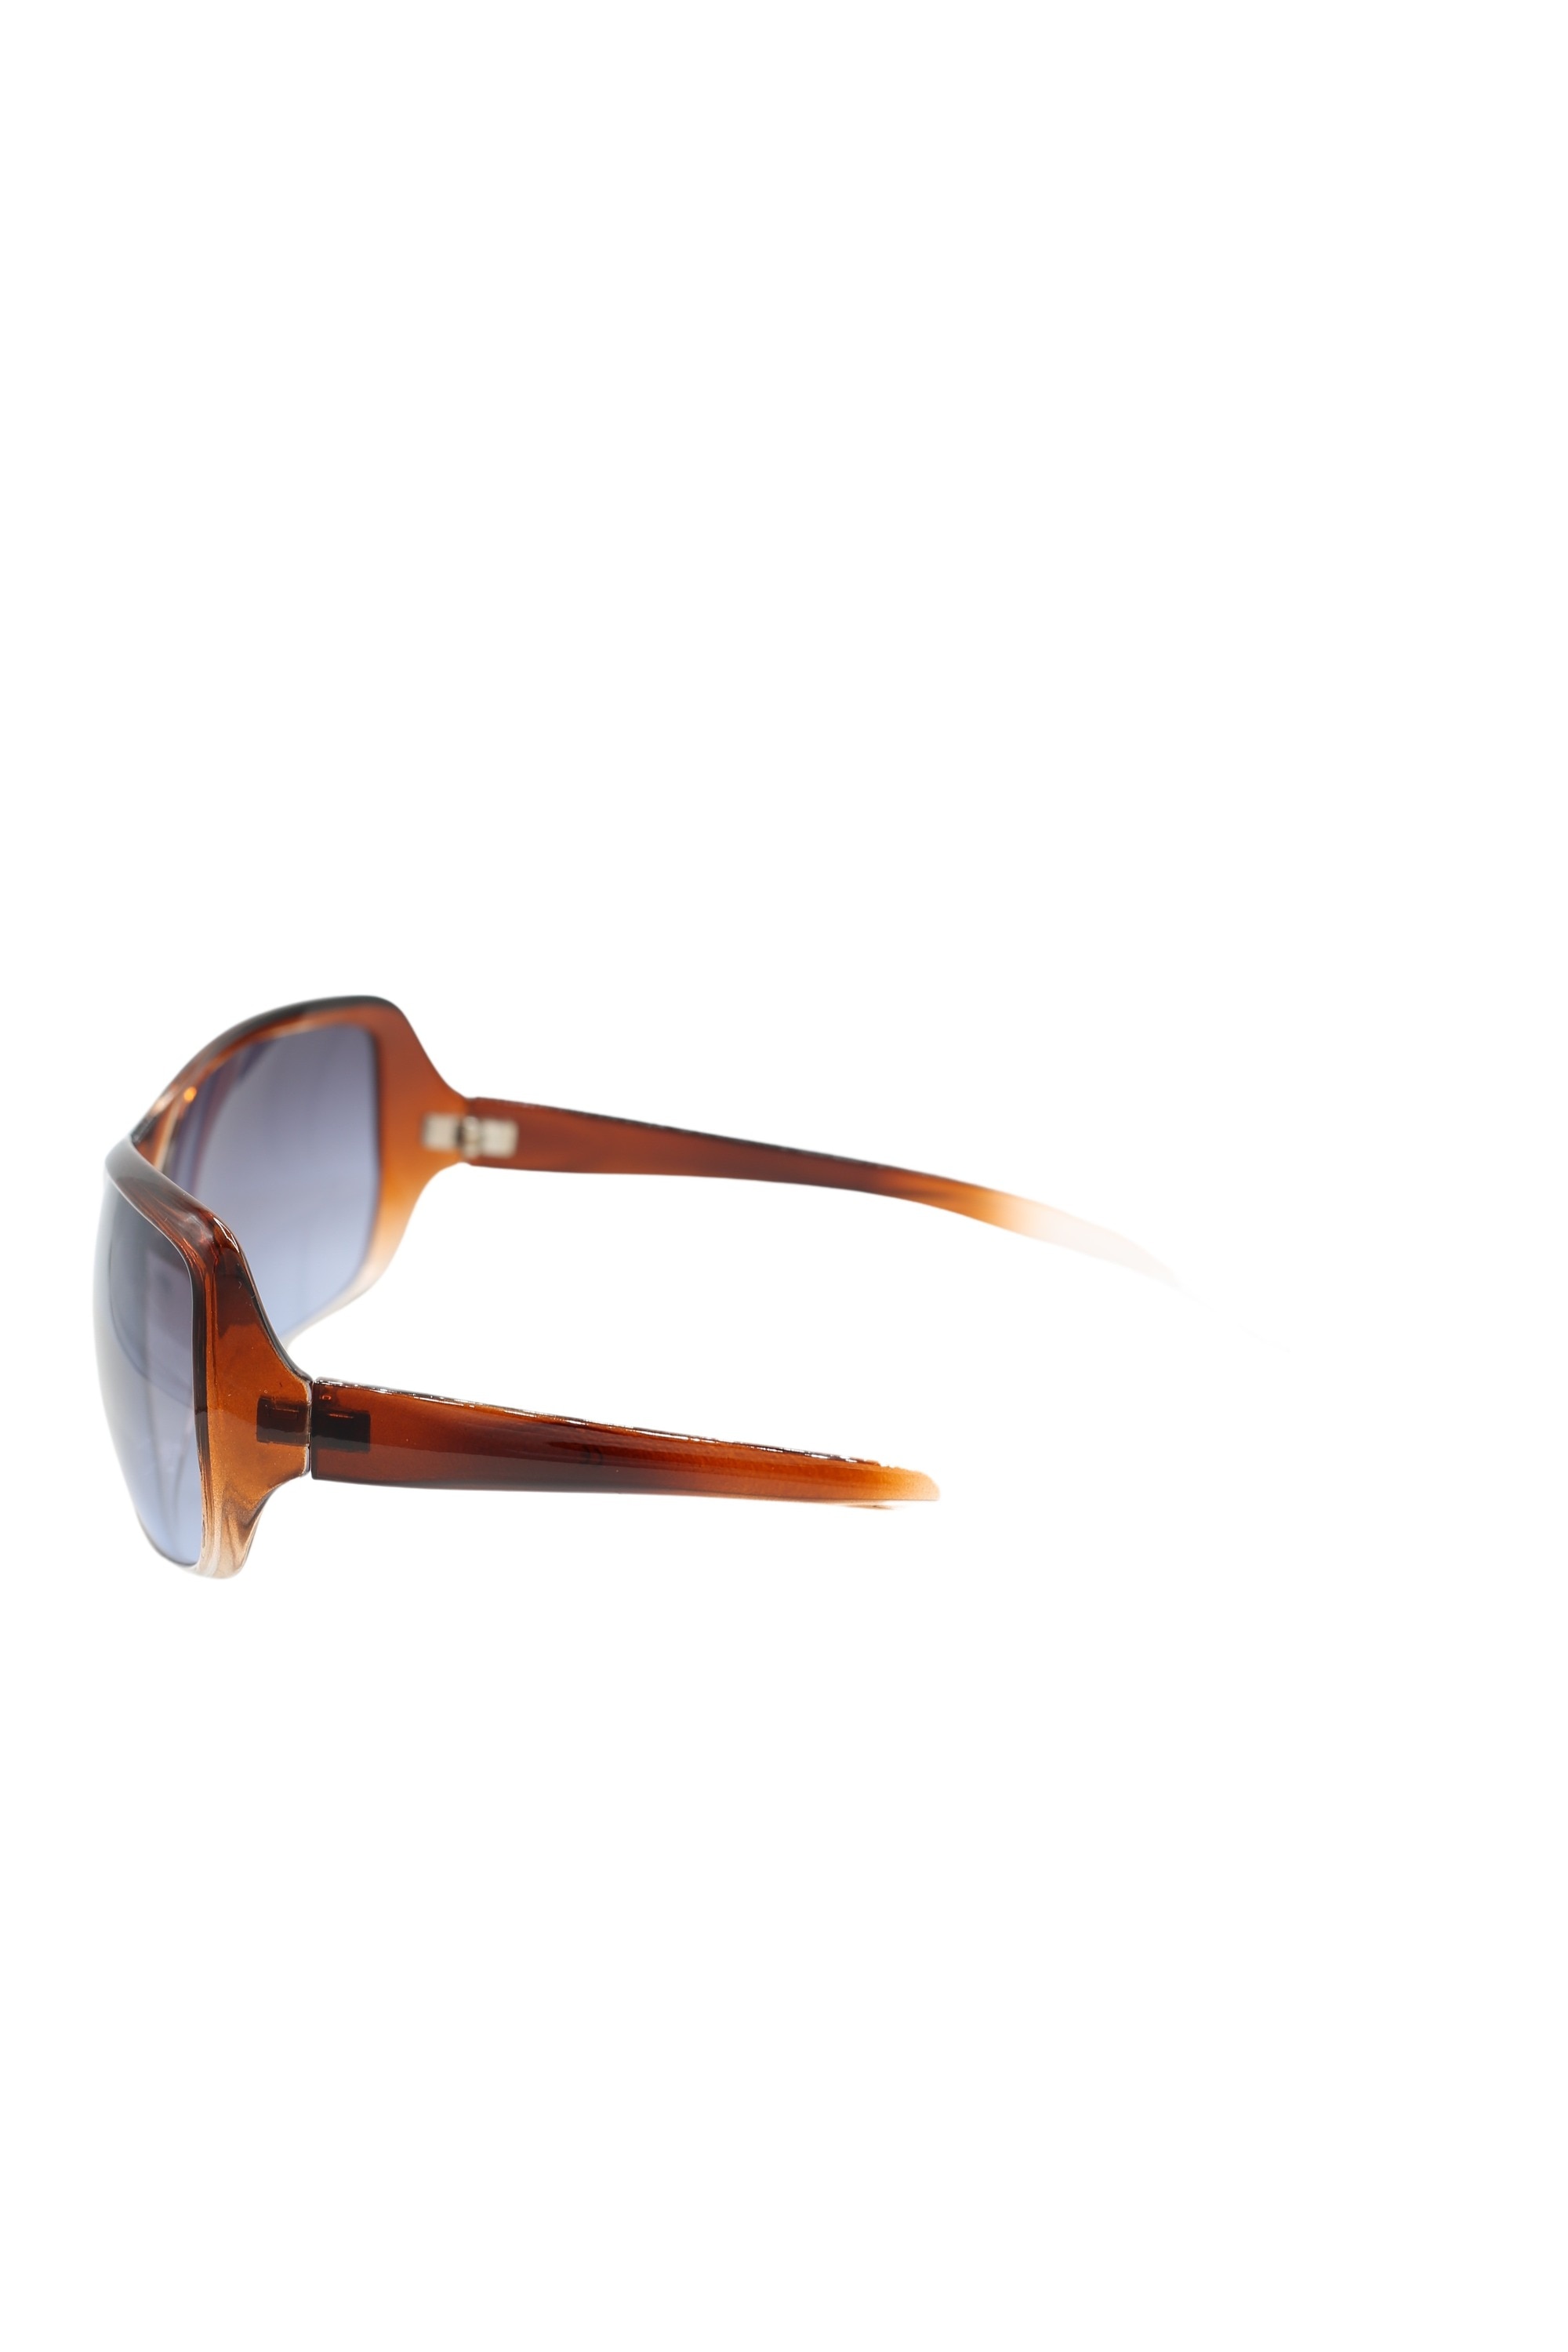 COLLEZIONE ALESSANDRO Sonnenbrille »Coolness«, mit polarisierten Linsen